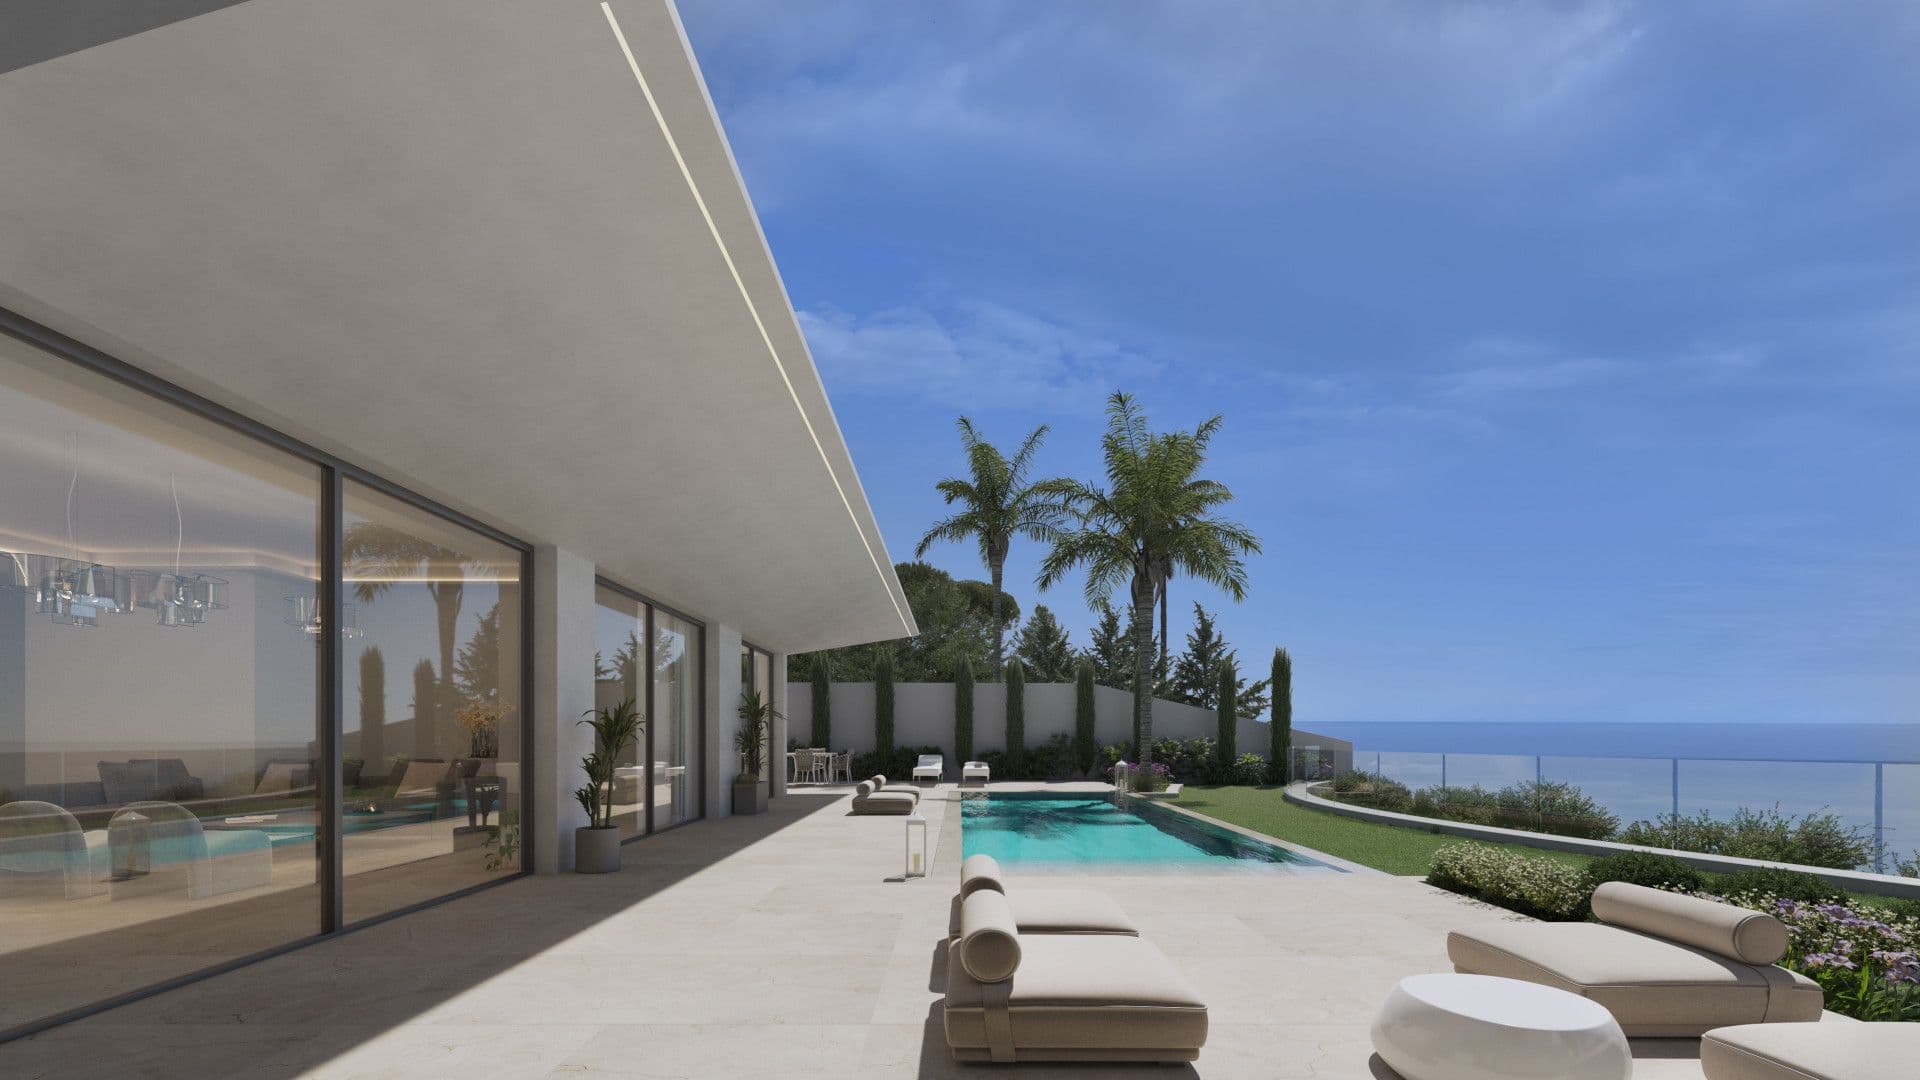 Wunderschöne Villa auf einem Grundstück in erster Meereslinie mit Blick auf das Mittelmeer in Balcón al Mar, Jávea (Alicante) Spanien.